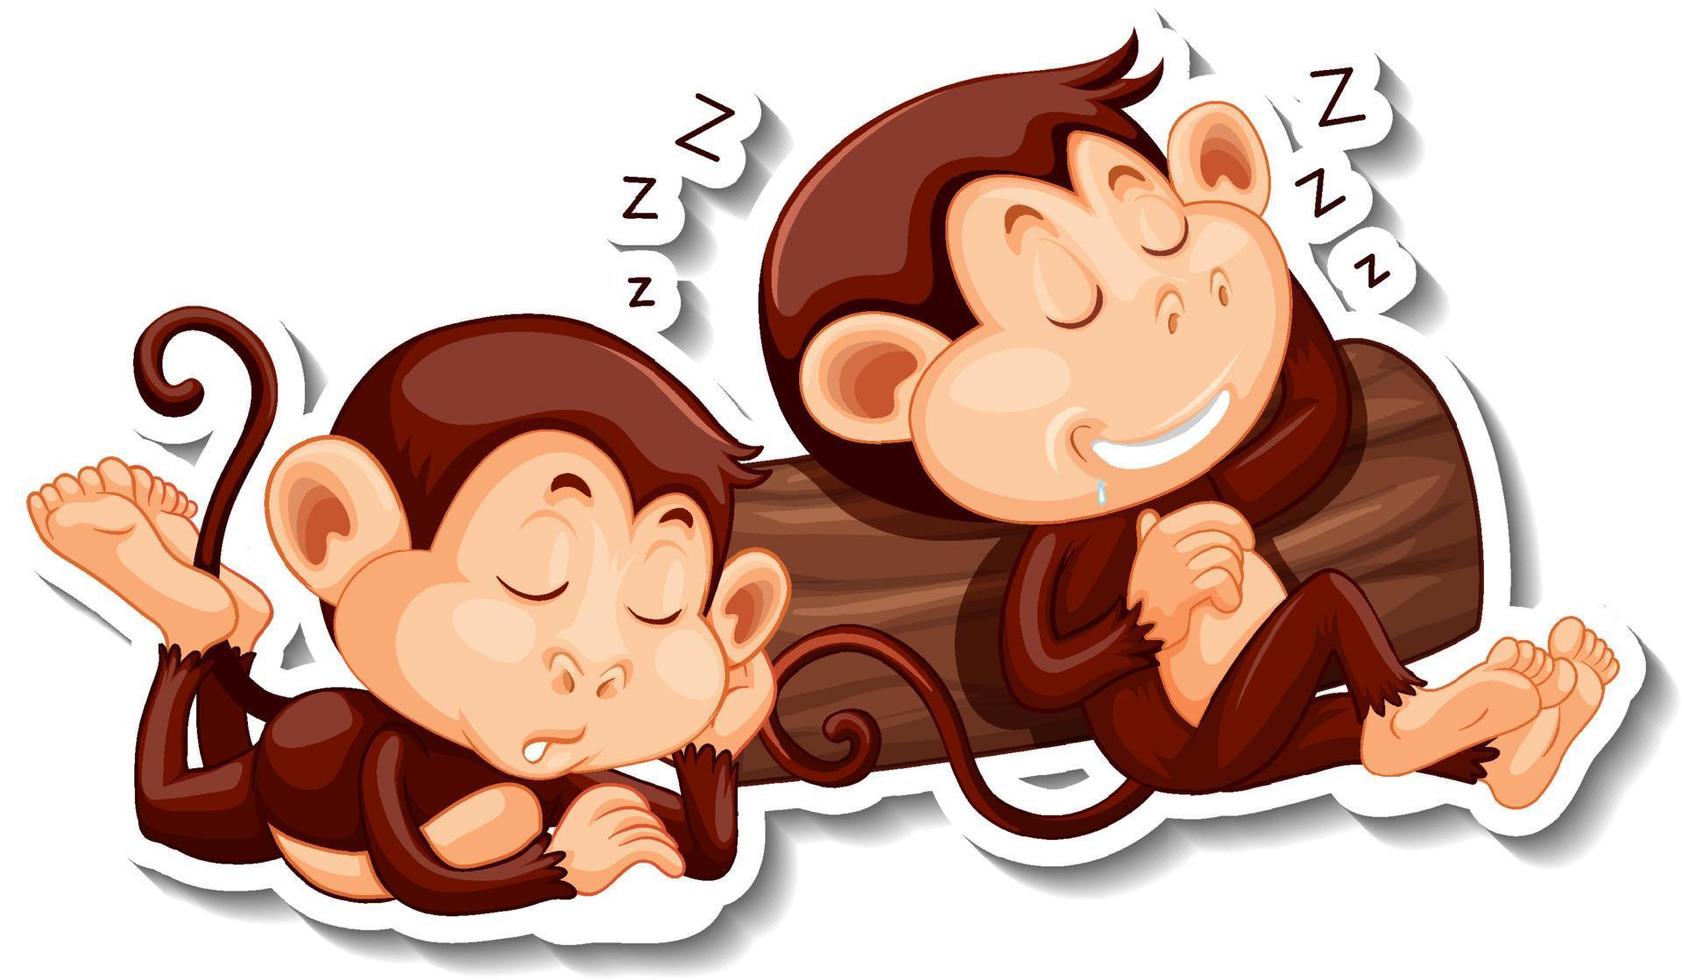 apor som sover tecknad filmkaraktär vektor